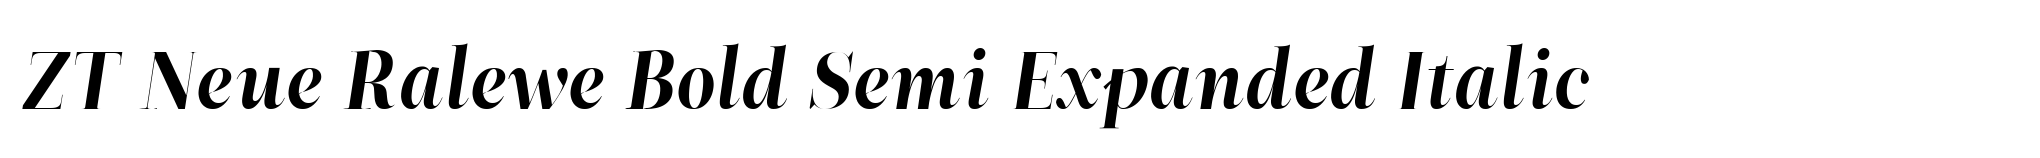 ZT Neue Ralewe Bold Semi Expanded Italic image